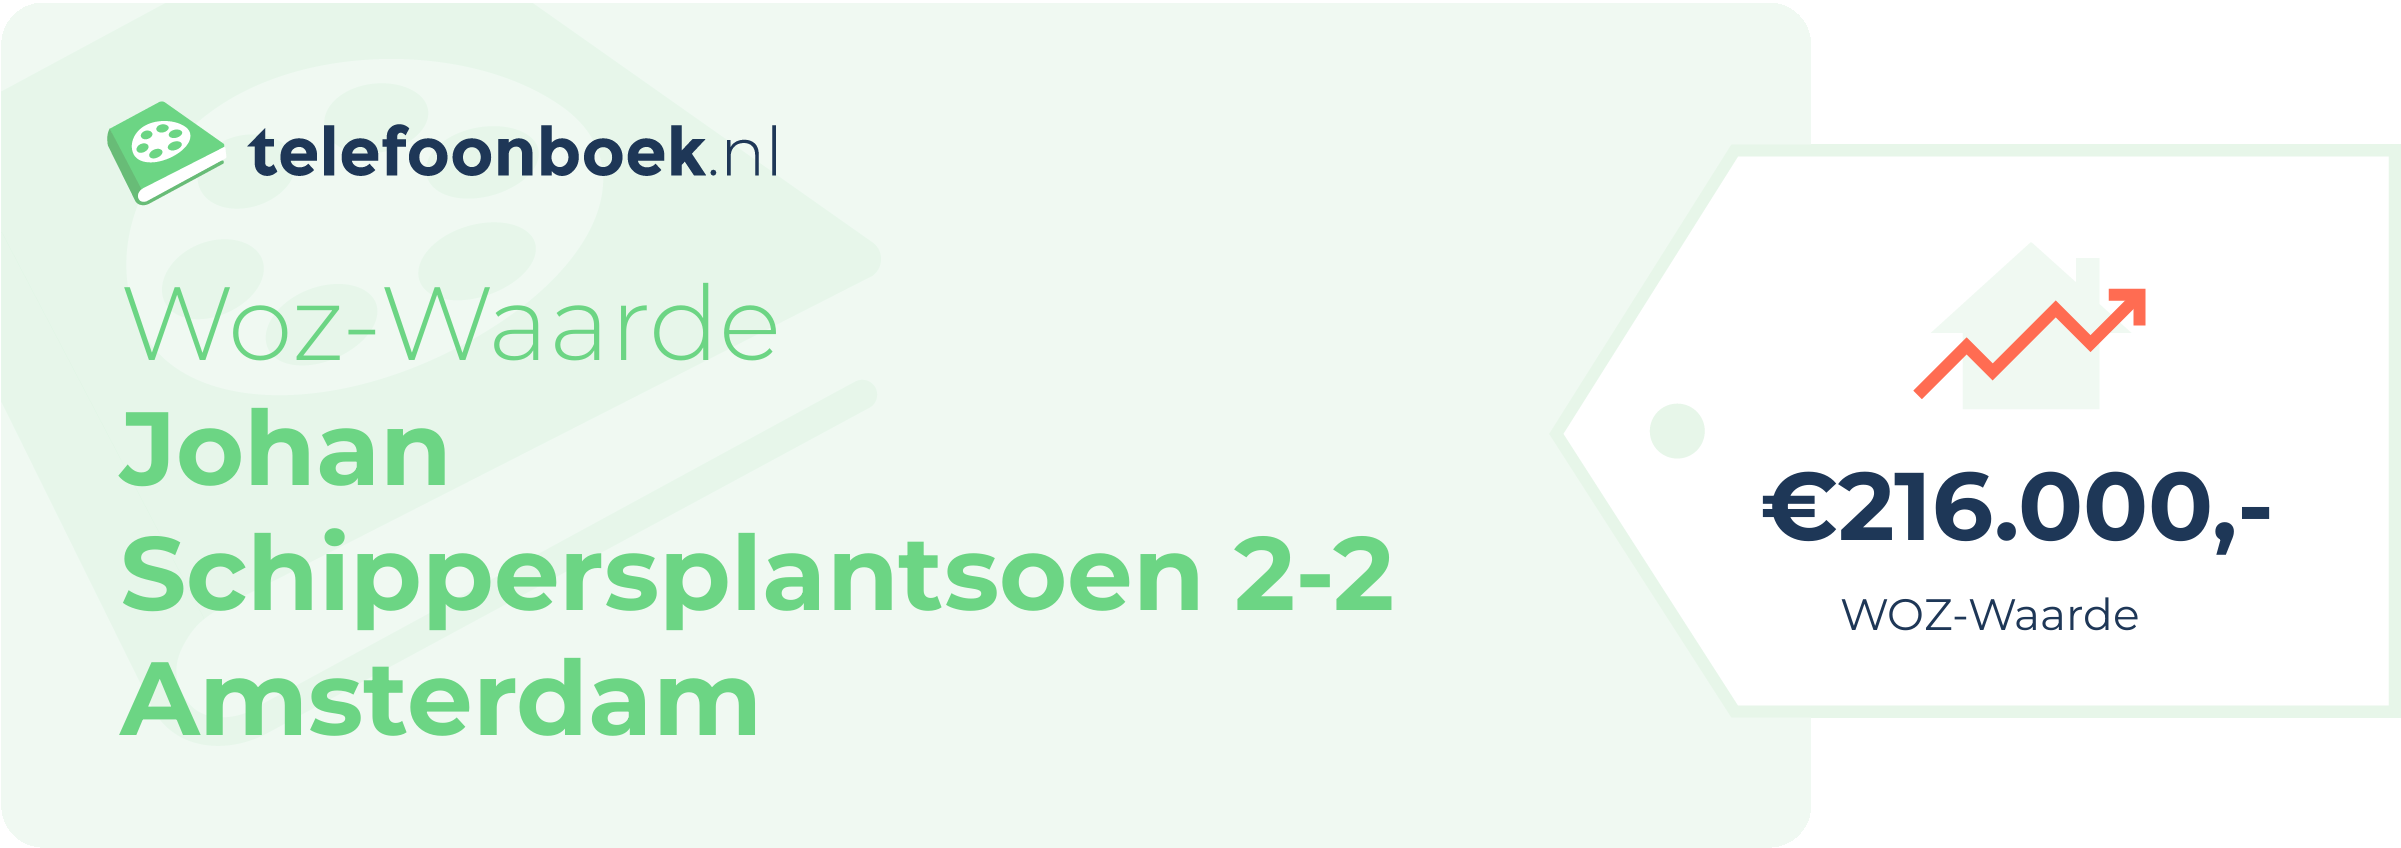 WOZ-waarde Johan Schippersplantsoen 2-2 Amsterdam